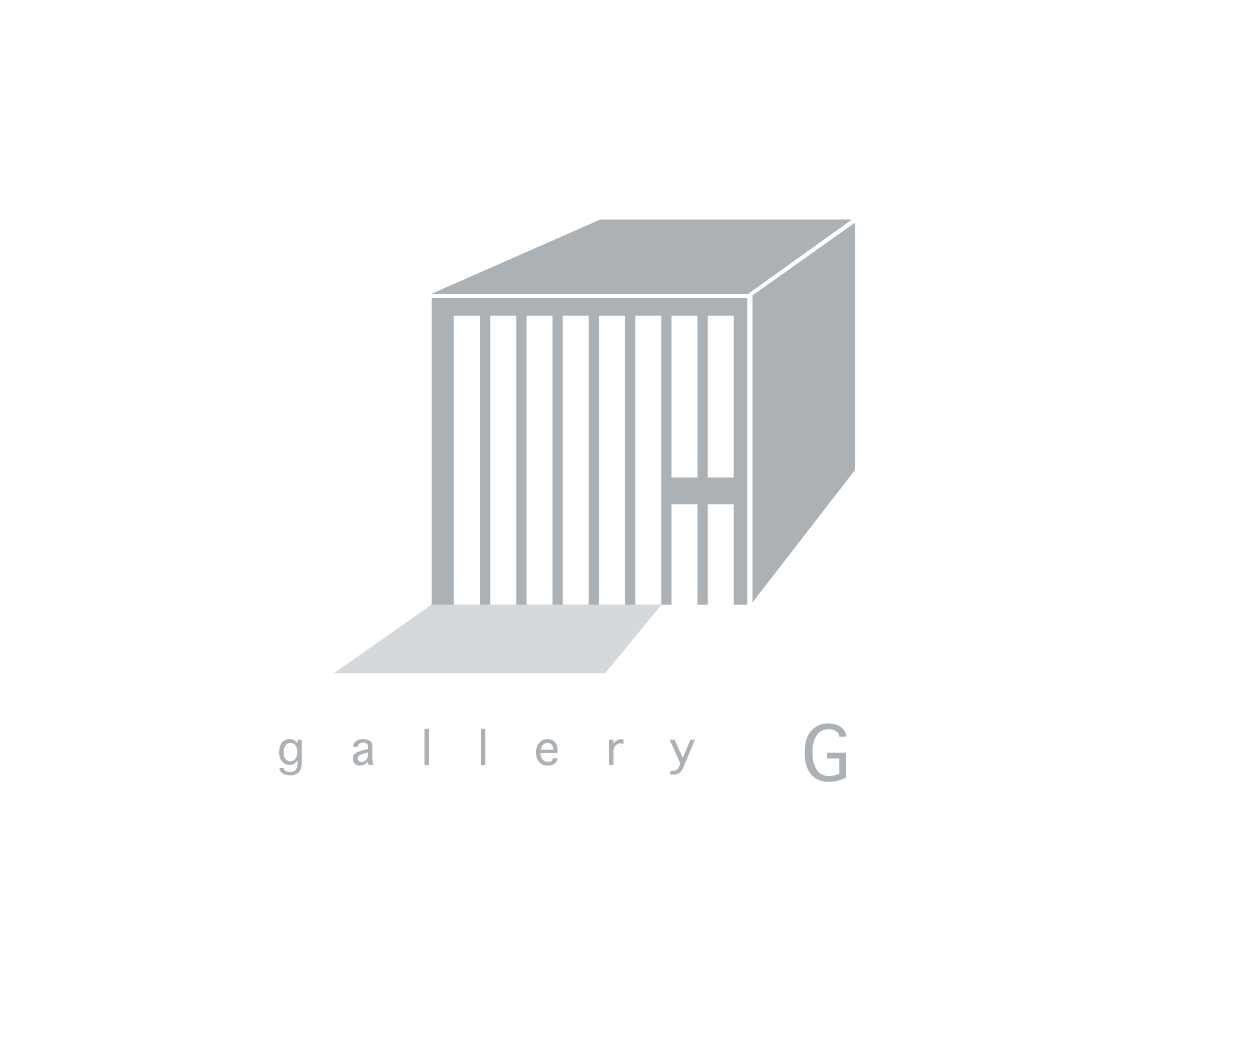 gallery G